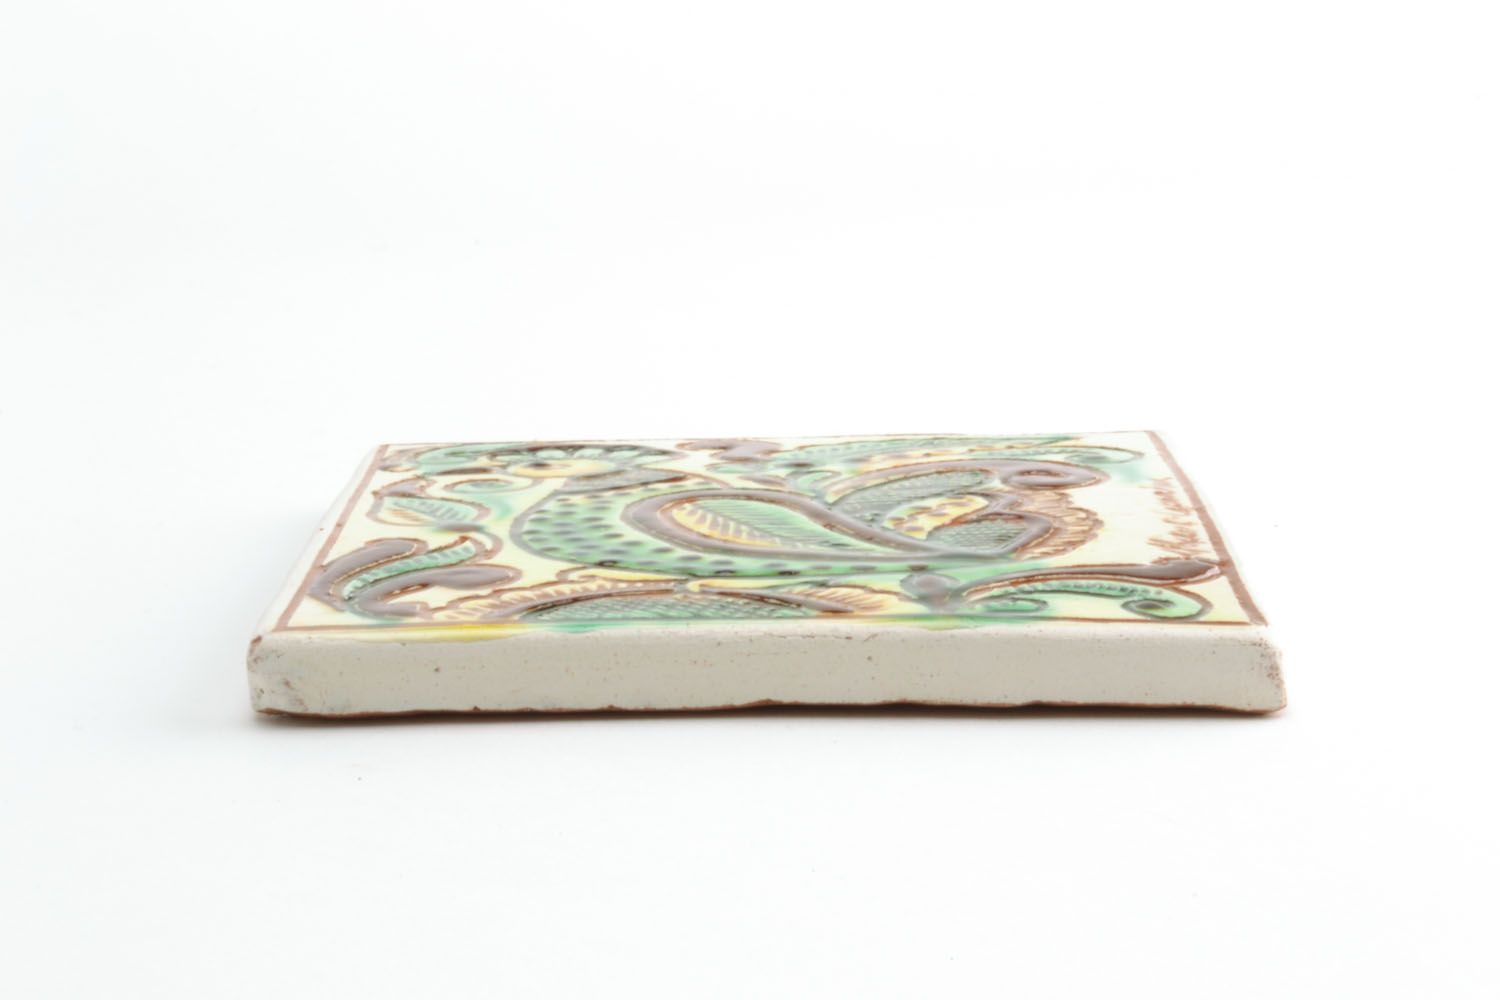 Homemade ceramic tile photo 4